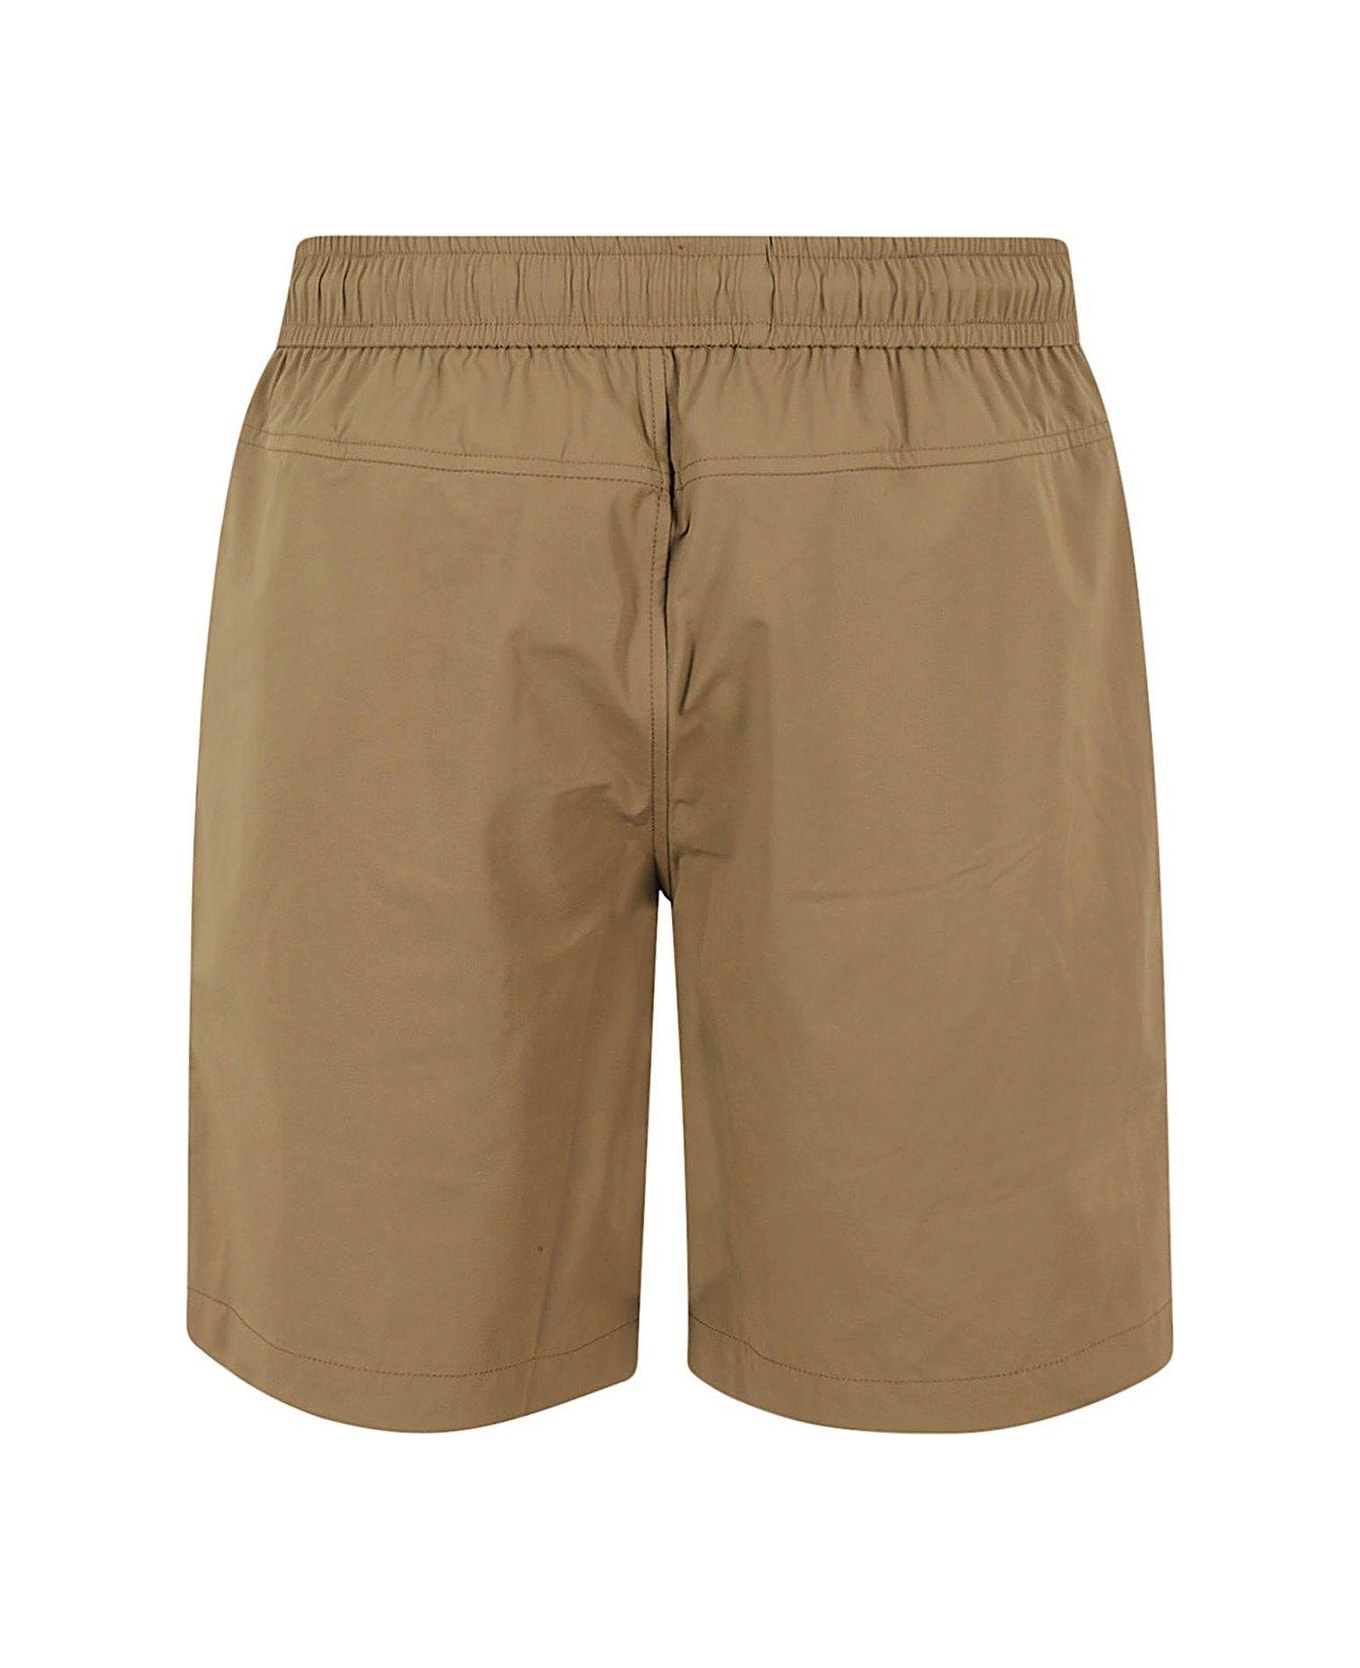 K-Way Elasticated Drawstring Waistband Shorts - Brown Corda ショートパンツ